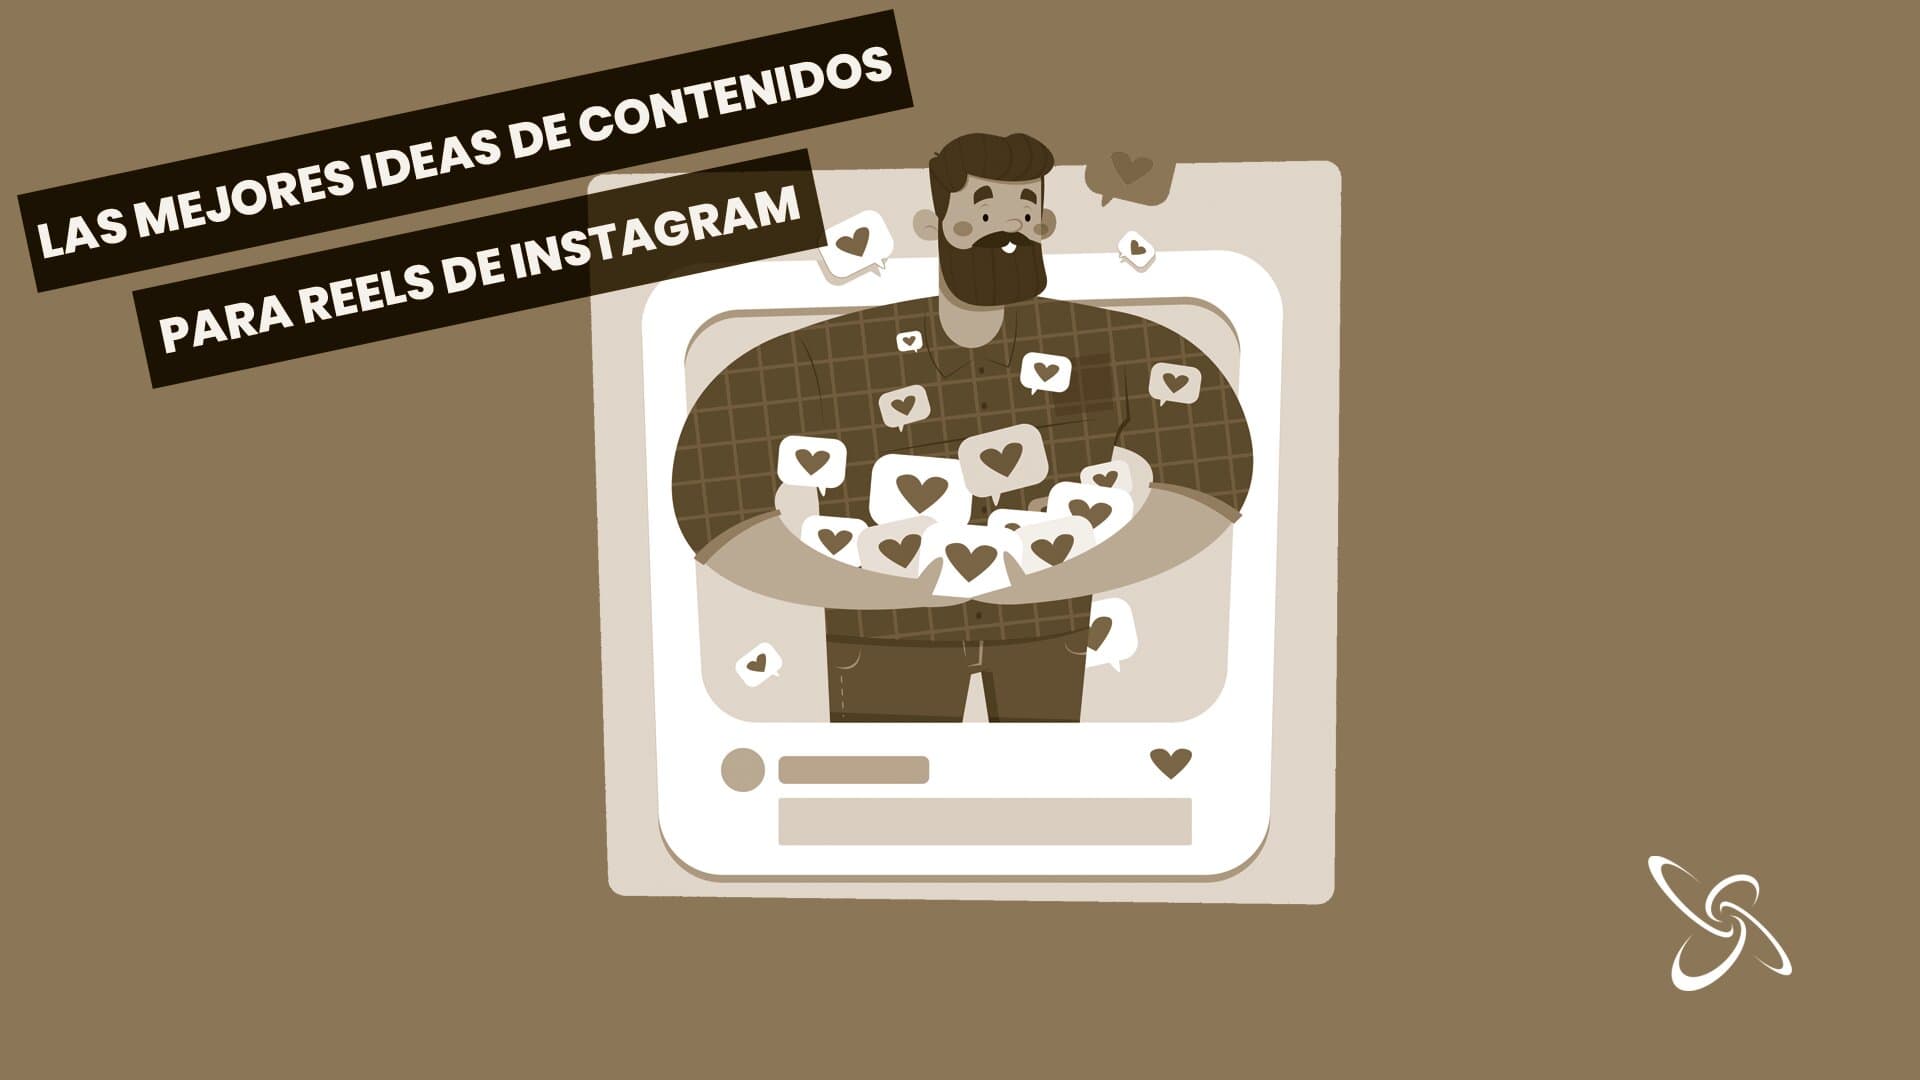 Las mejores ideas de contenidos para Reels de Instagram